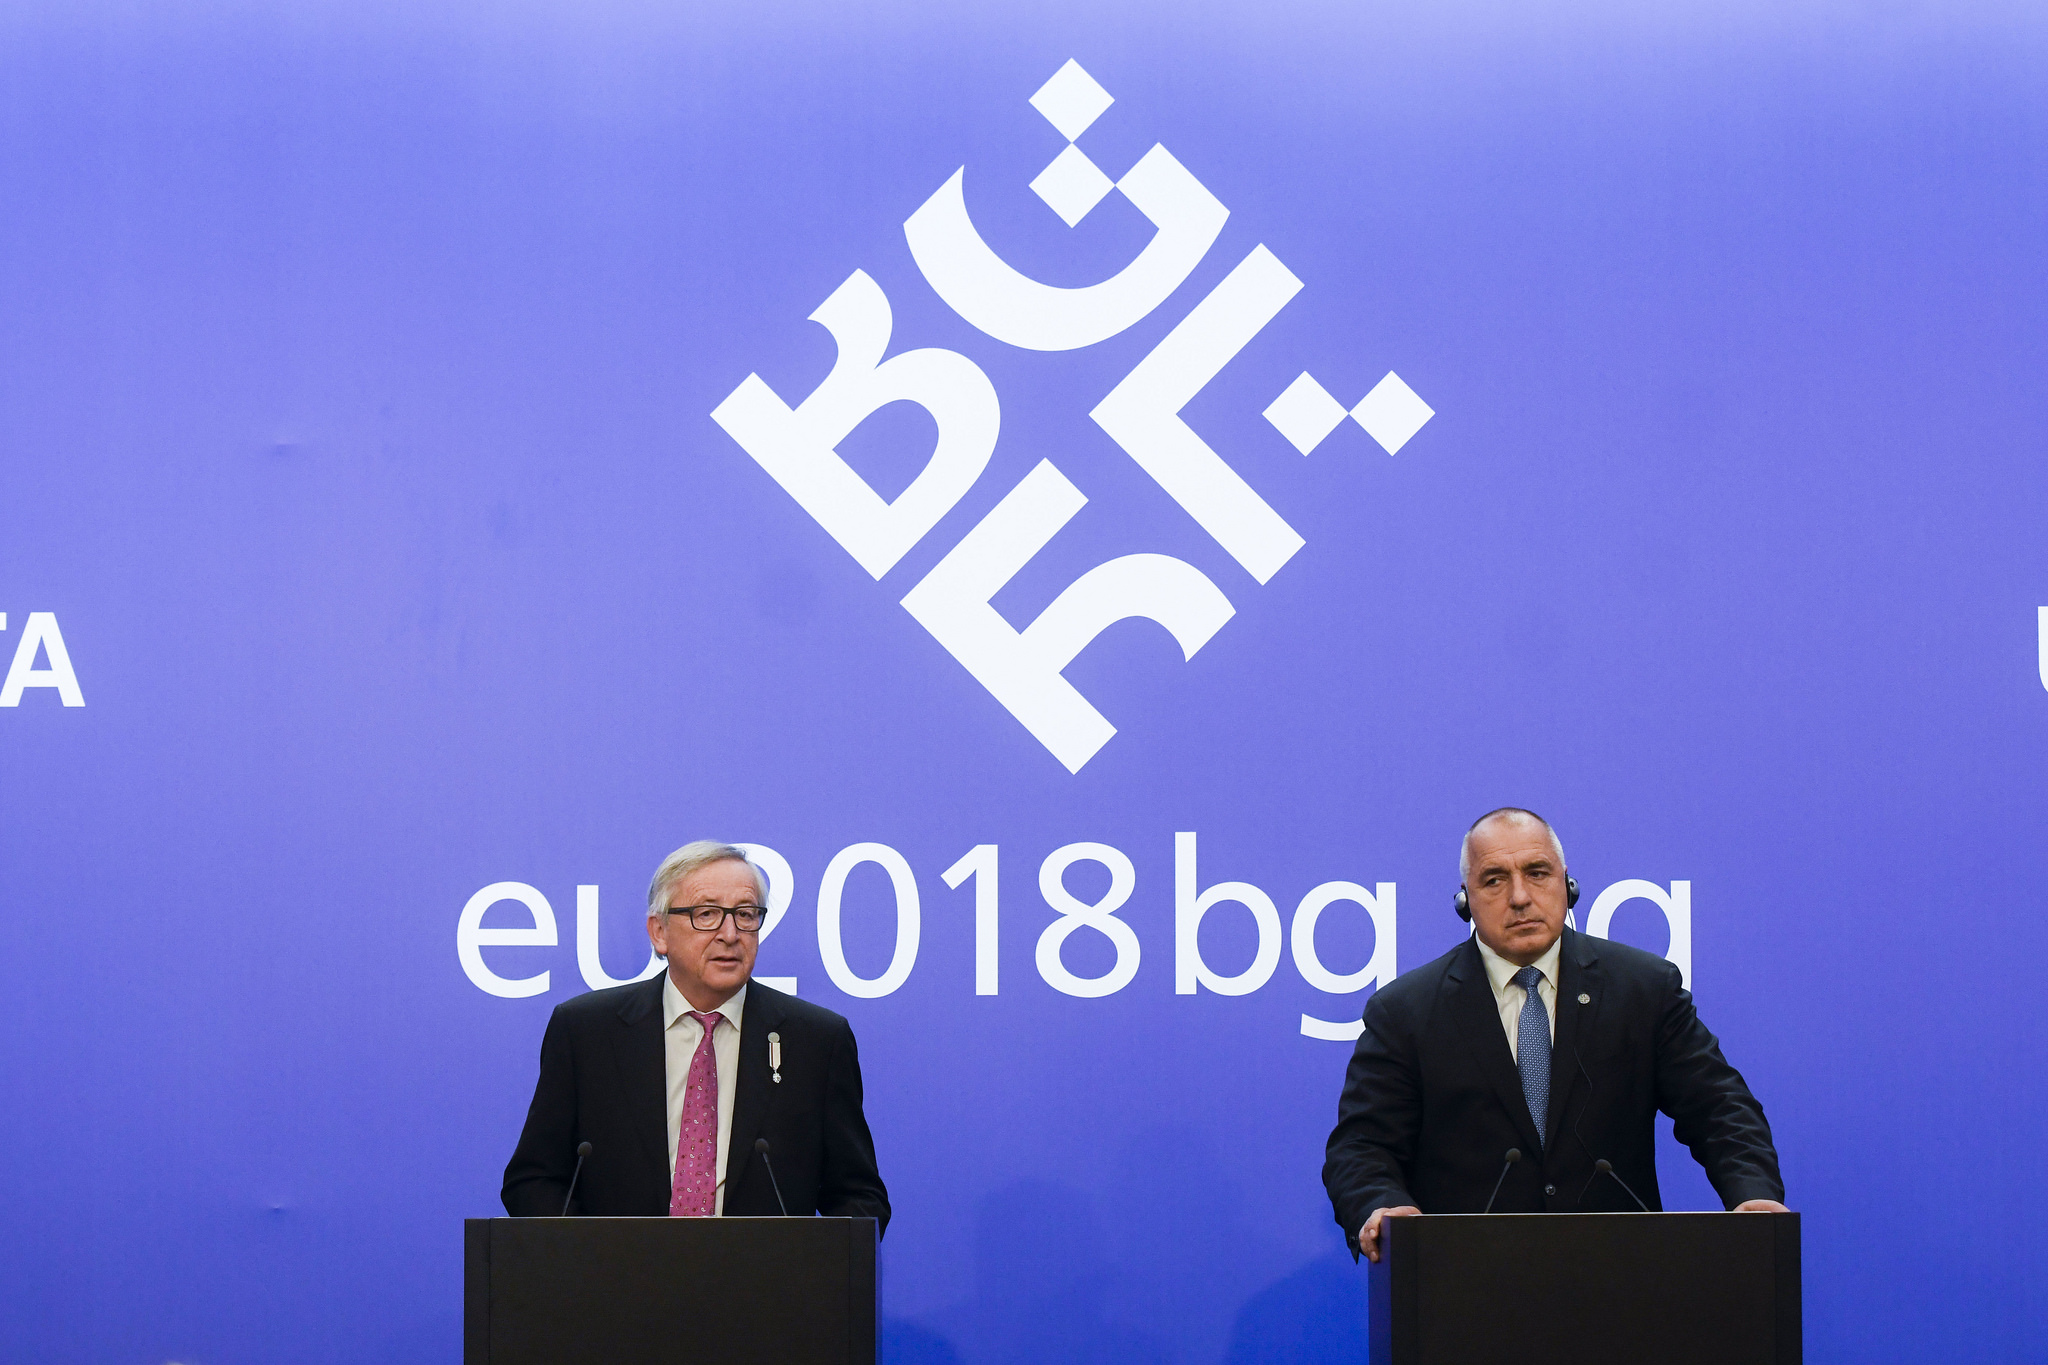 رئيس المفوضية الأوروبية جان كلود يونكر مع رئيس الوزراء البلغاري بويكو بوريسوف